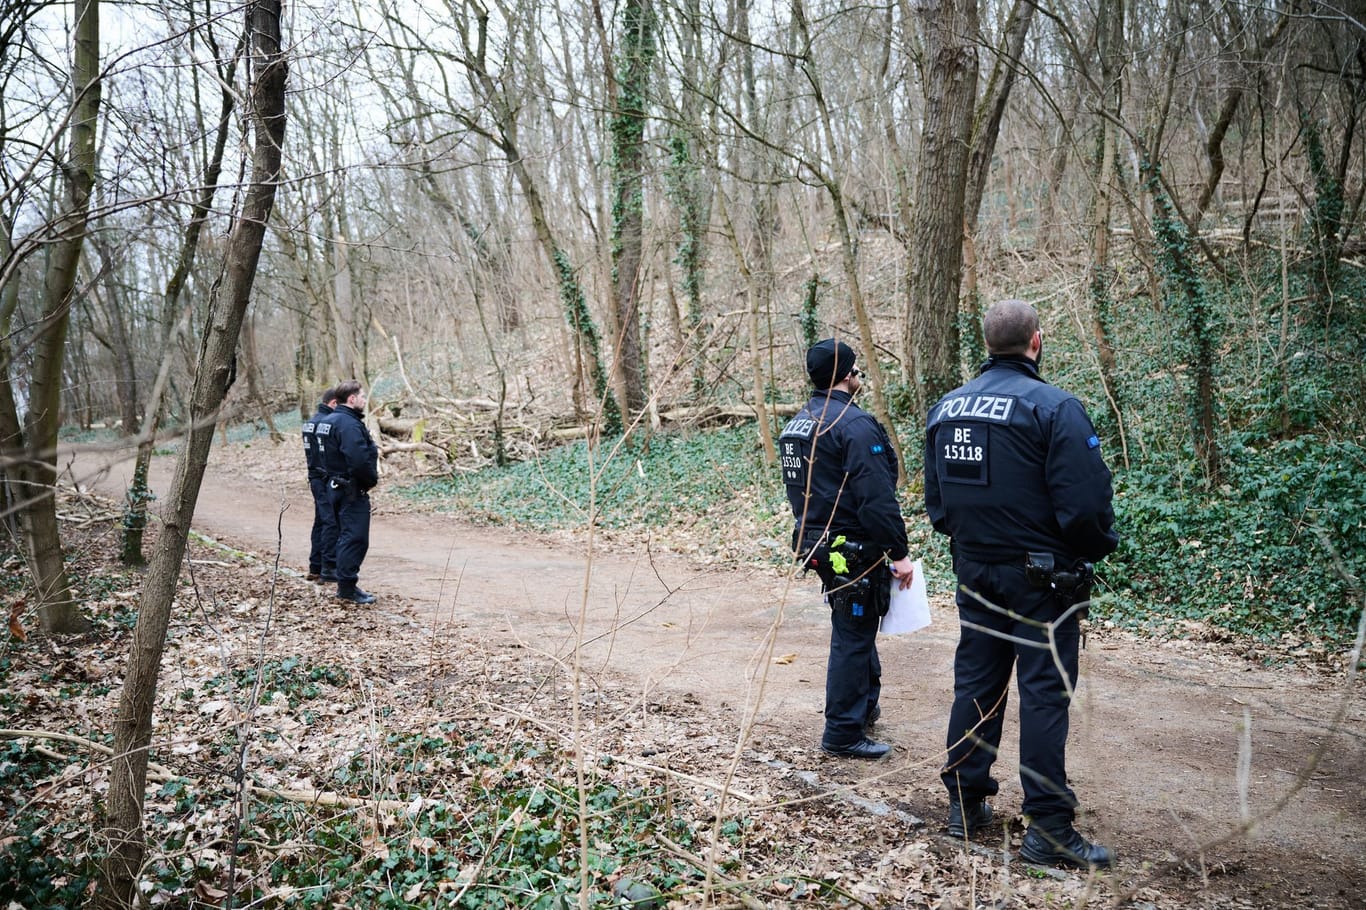 Polizisten stehen in einem Waldgebiet im Volkspark Prenzlauer Berg: Dort wurde ein abgetrennter Oberschenkel gefunden.